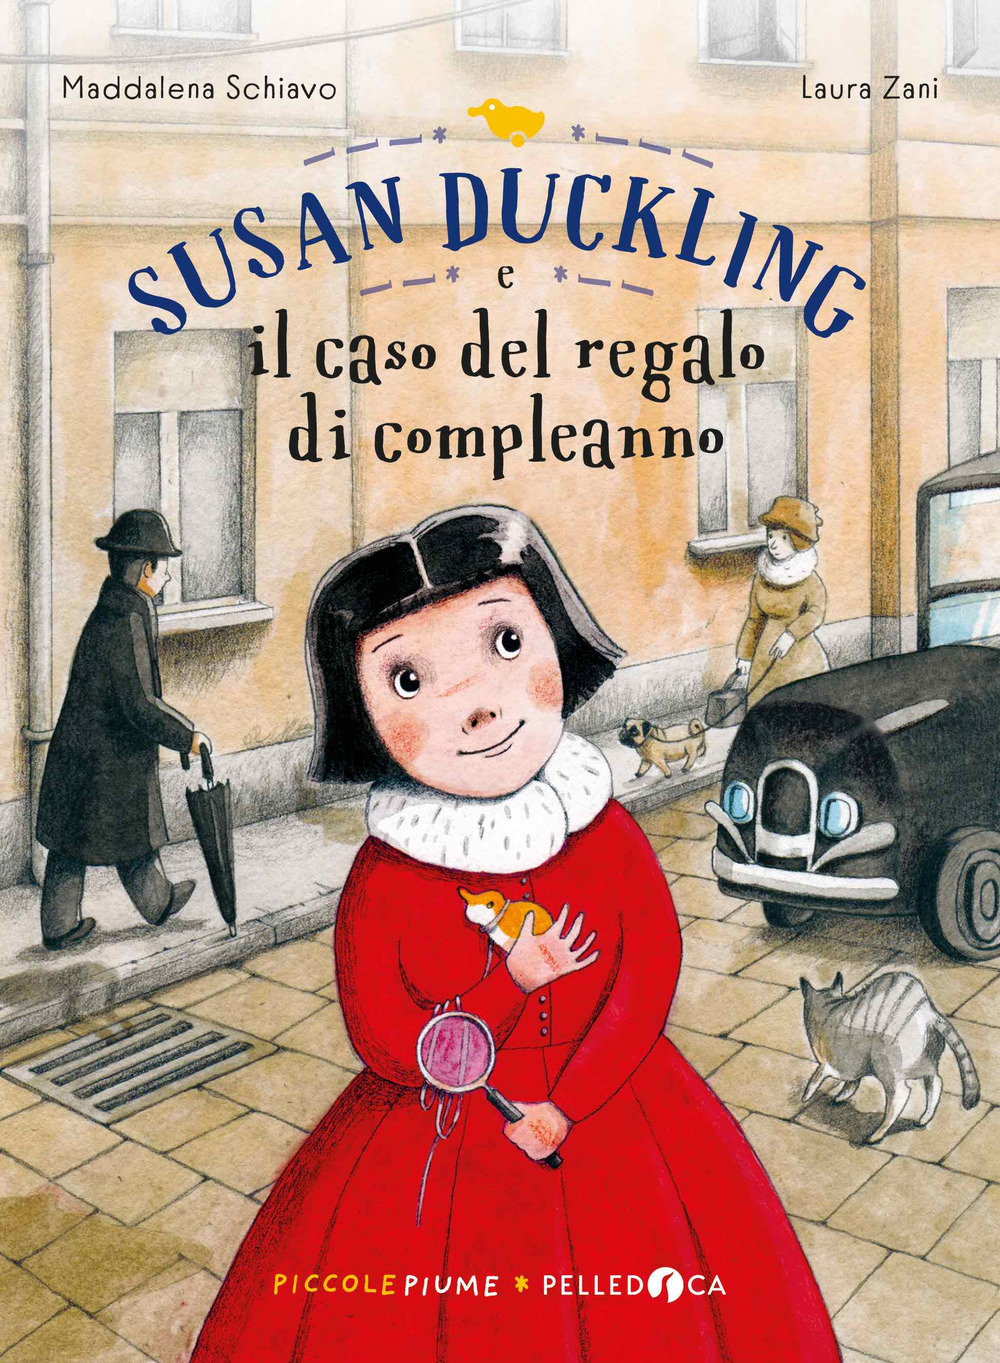 Susan Duckling e il caso del regalo di compleanno